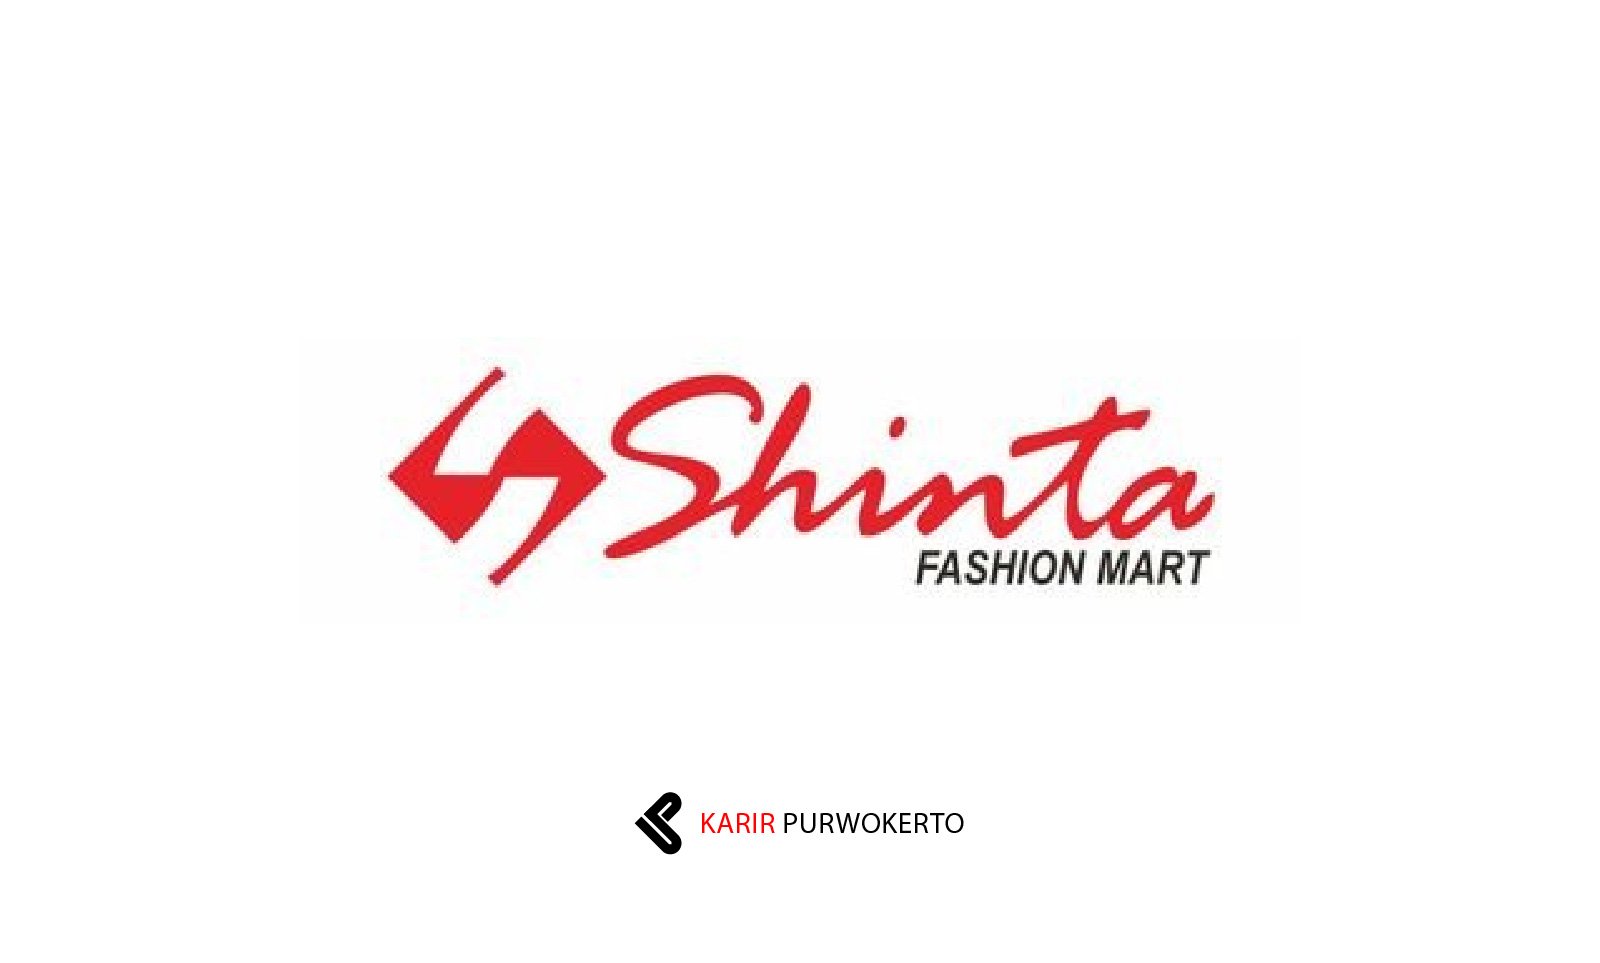 Lowongan Kerja Shinta Fashion Purwokerto